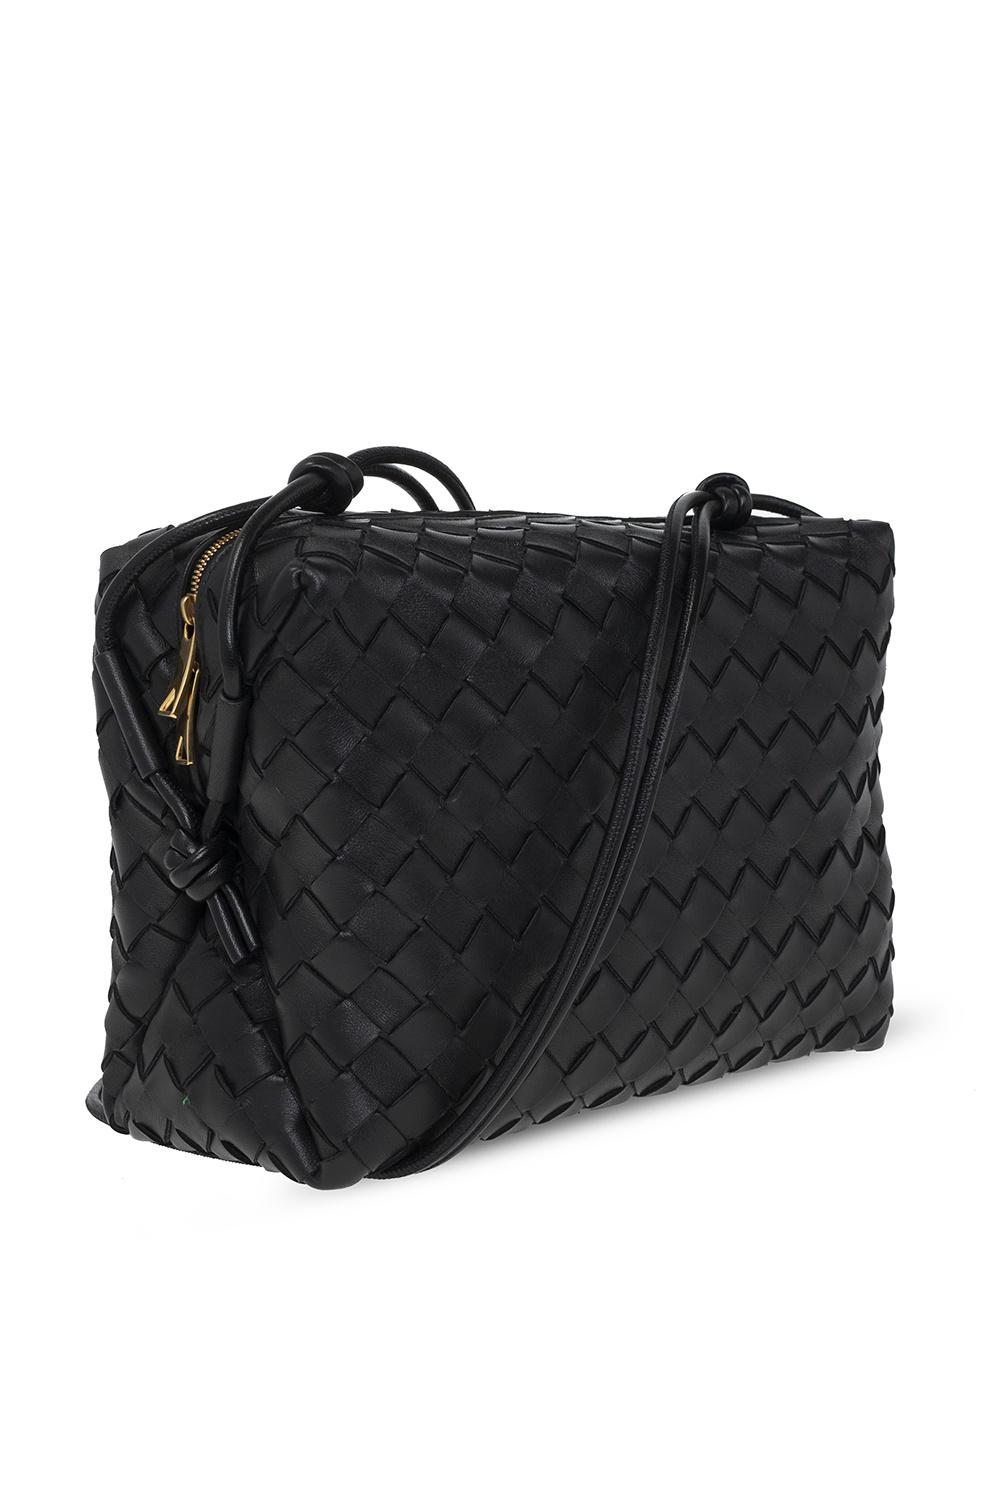 Bottega Veneta 'loop Medium' Shoulder Bag in Black